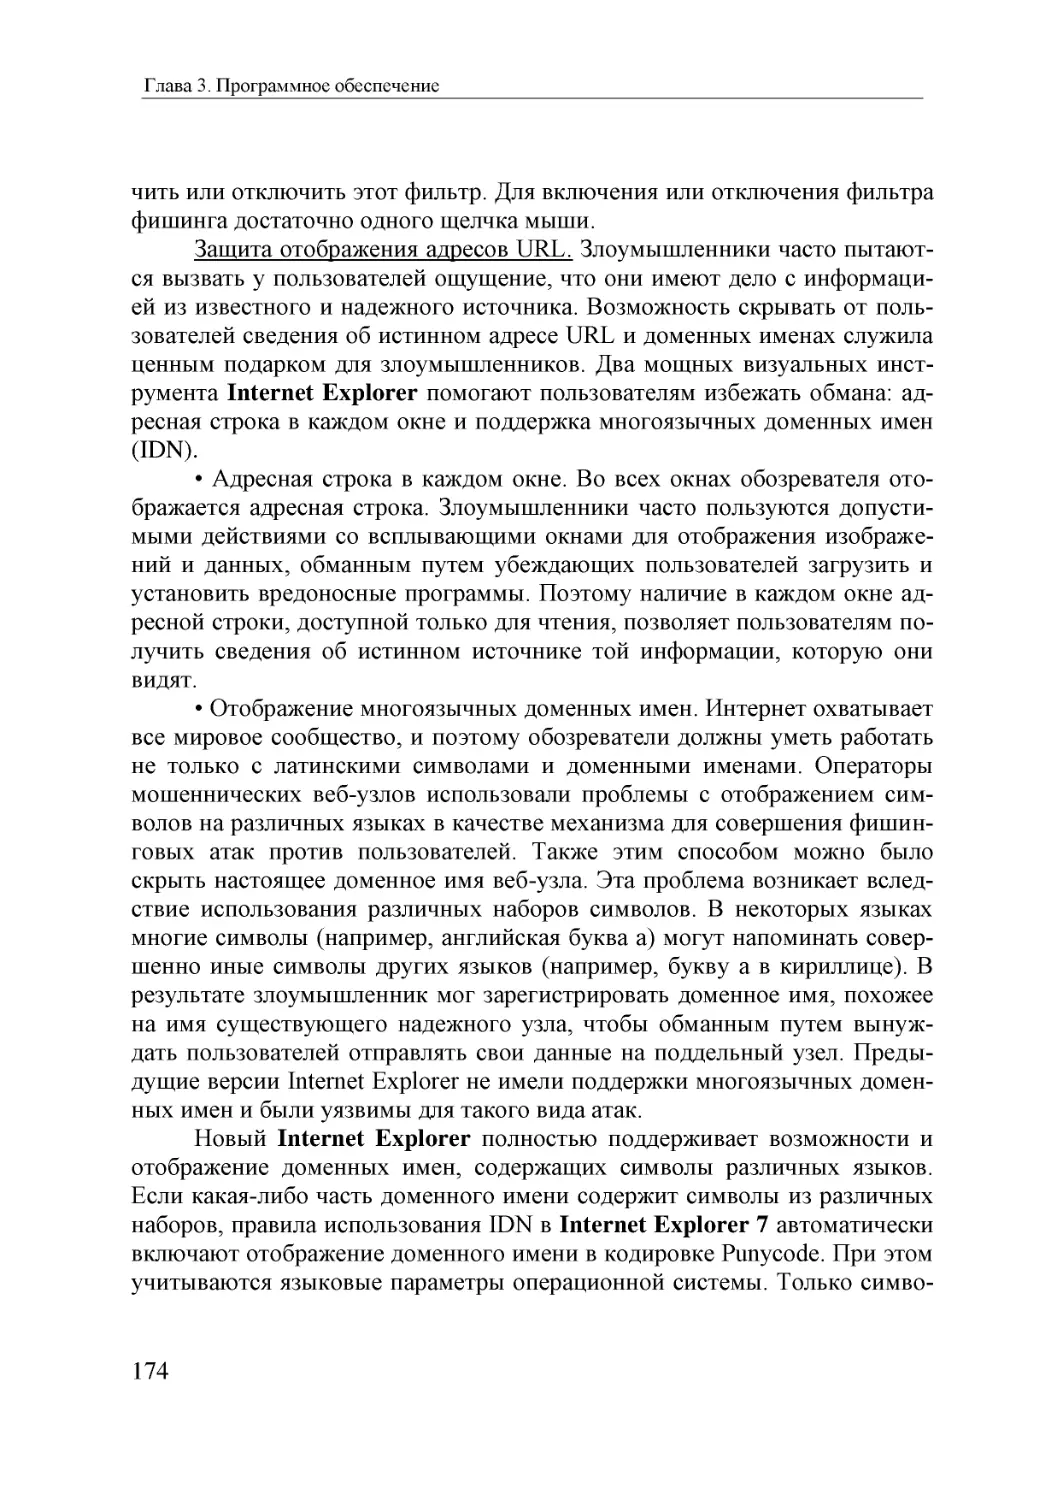 Informatika_Uchebnik_dlya_vuzov_2010 174